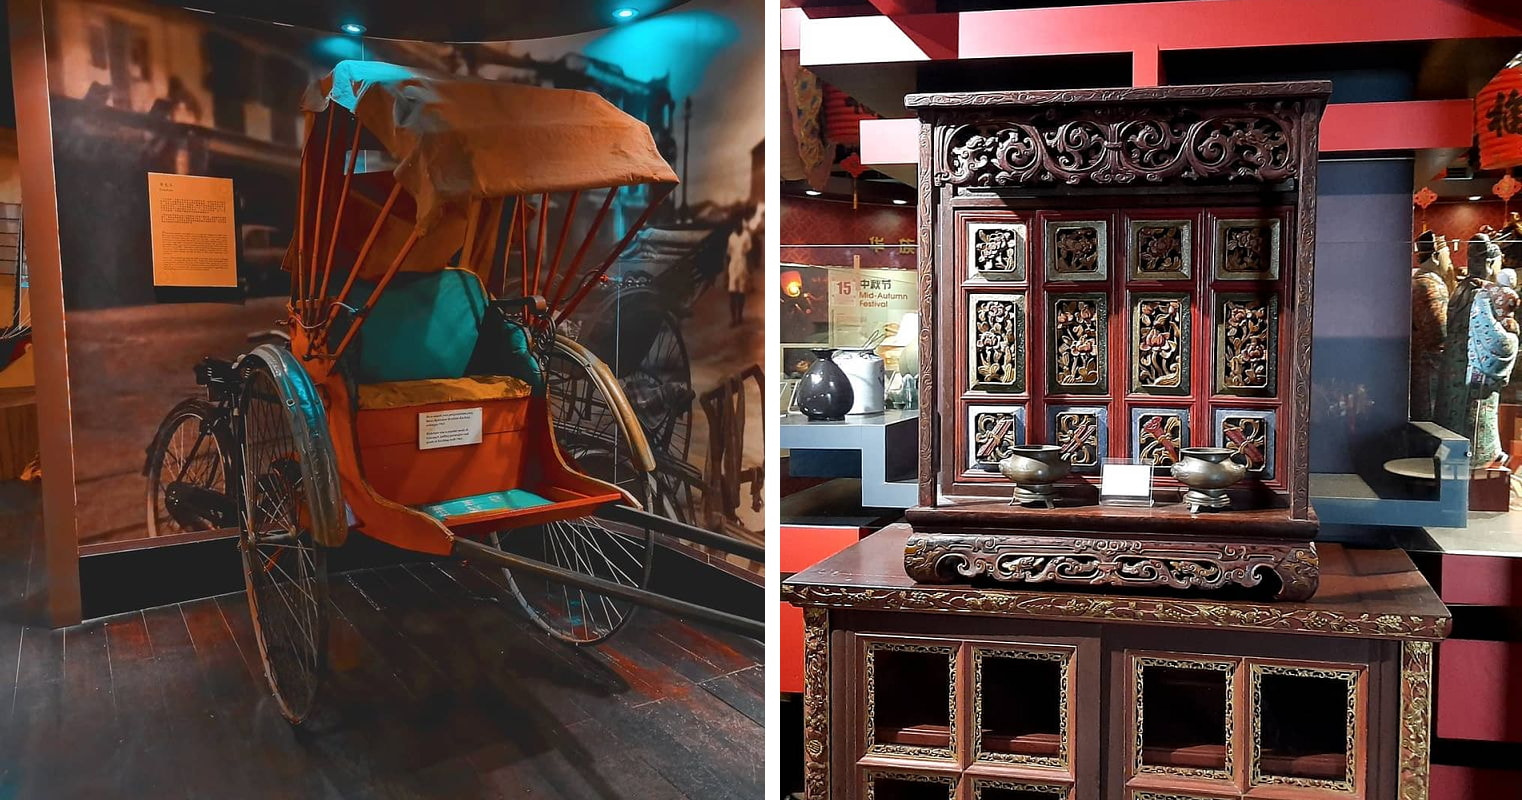 kuching chinese history museum exhibits